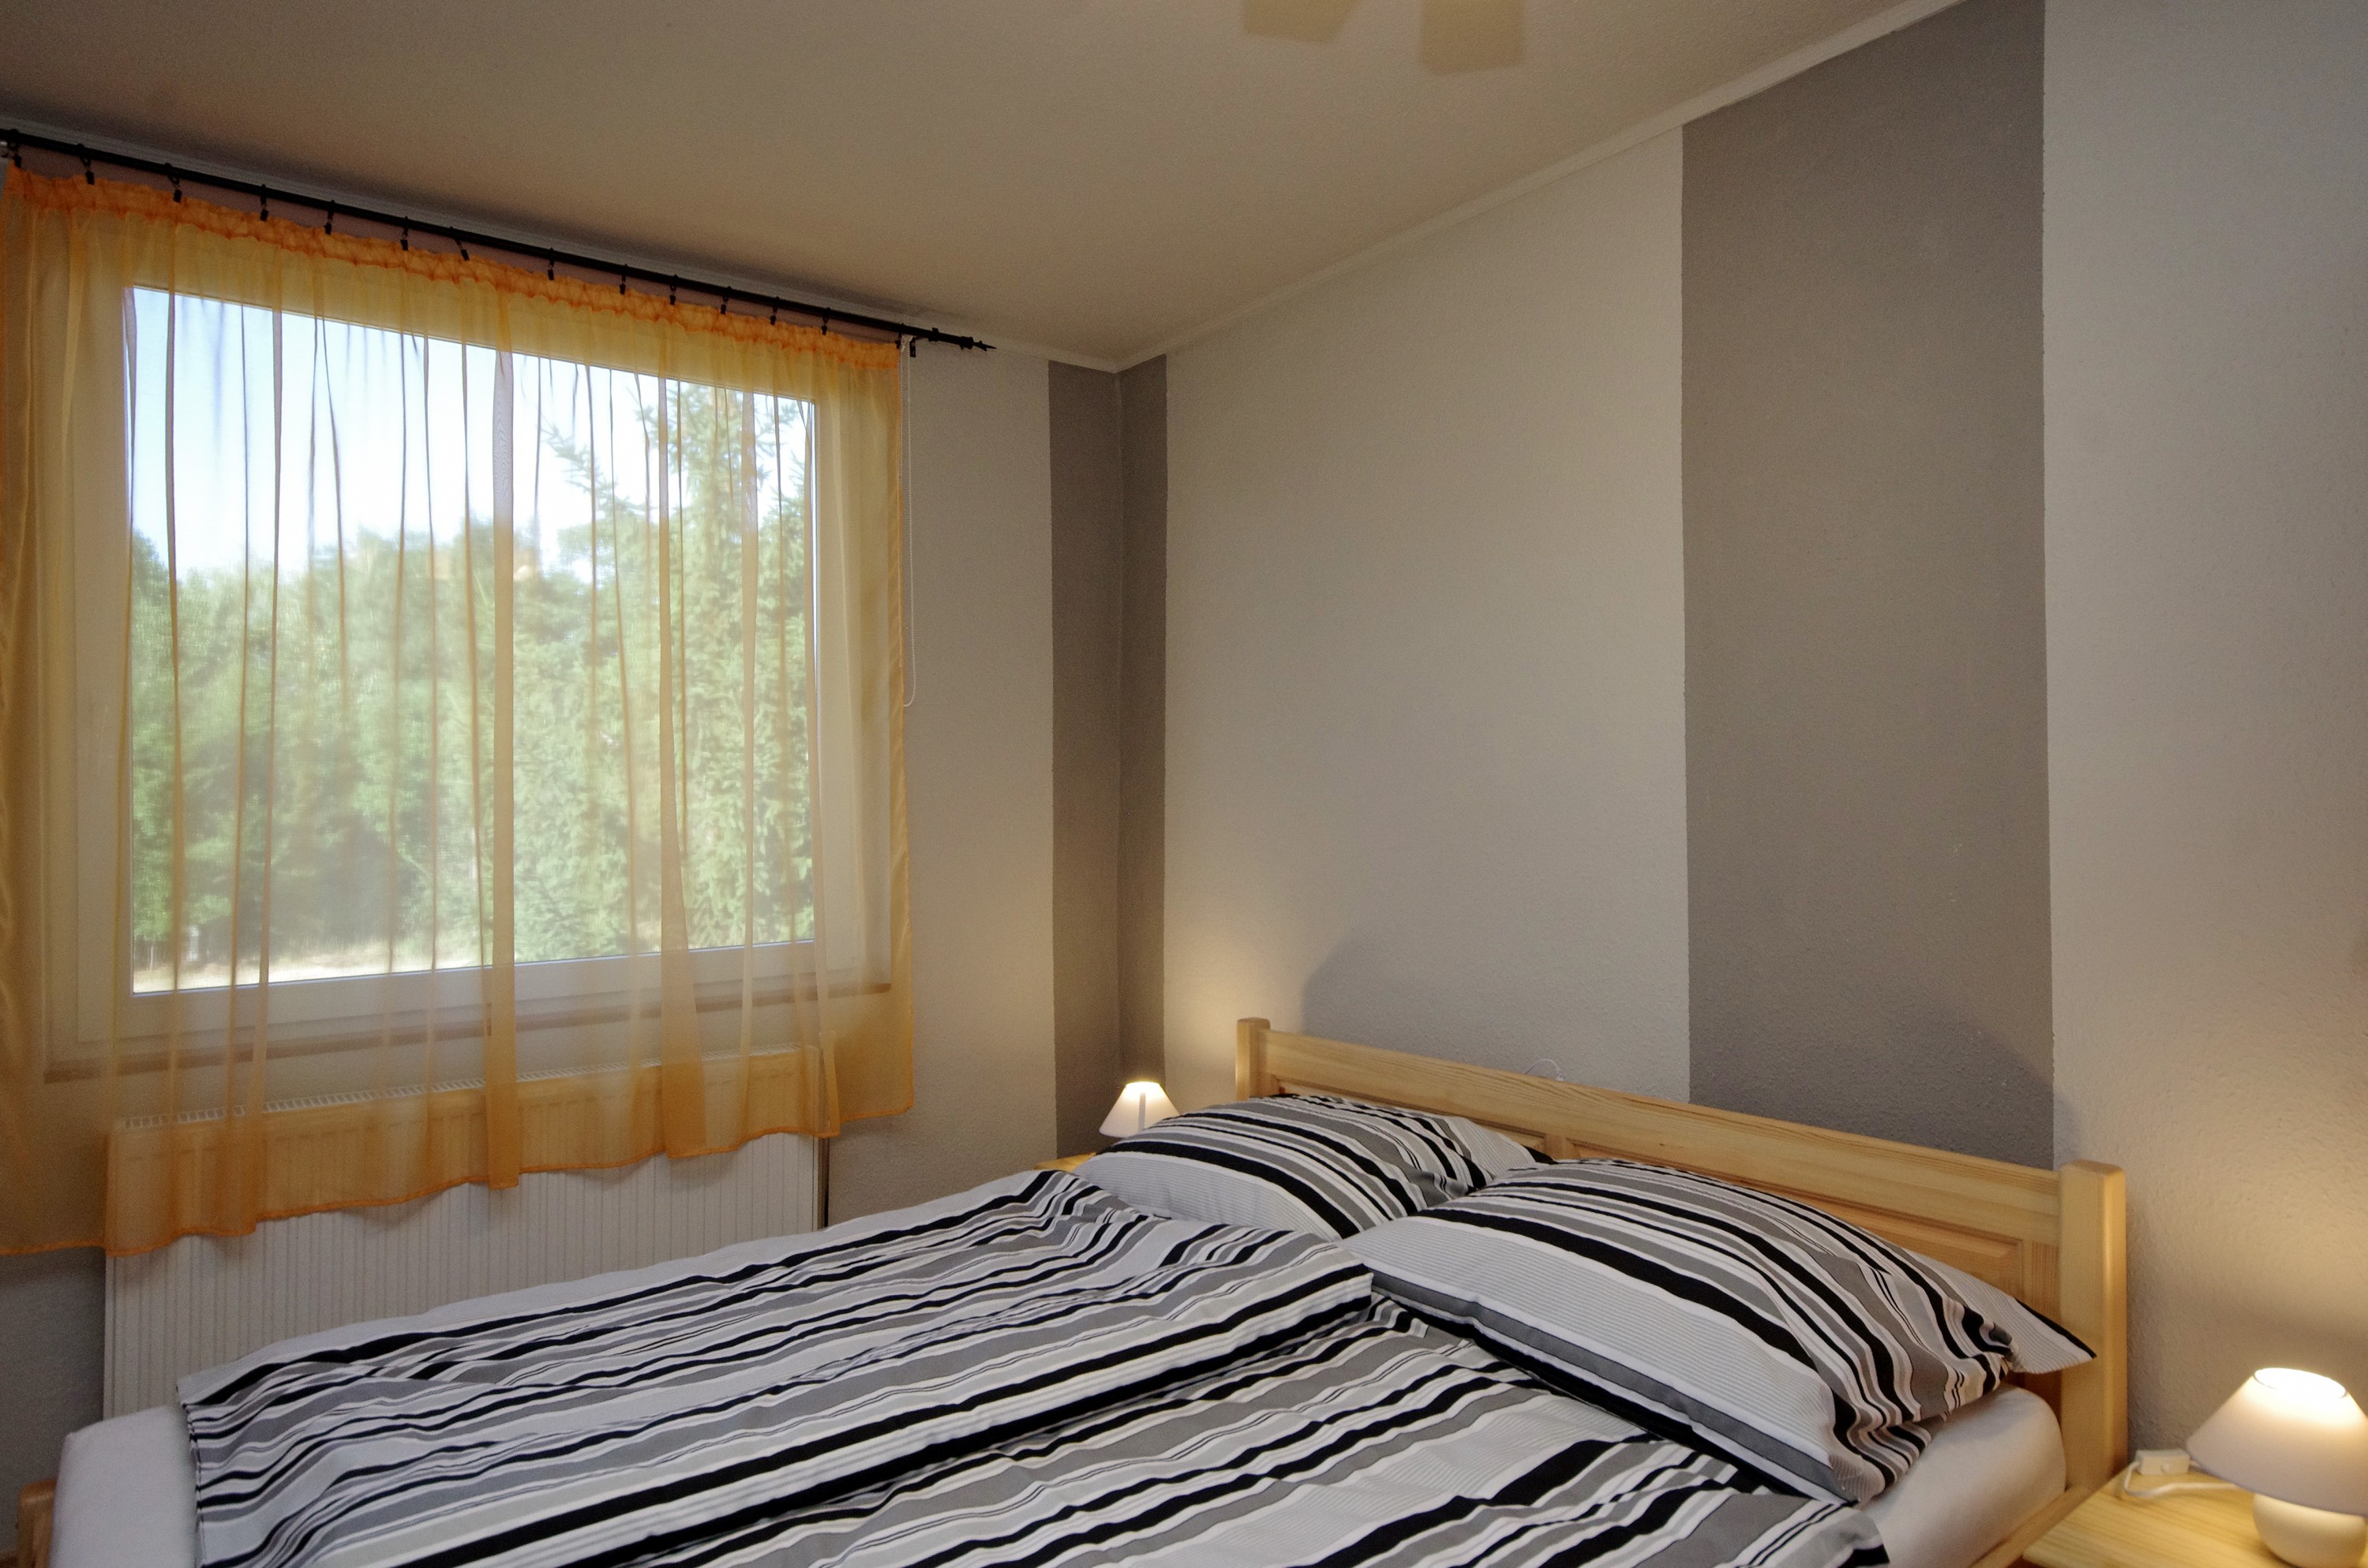 Téli szoba kétszemélyes ággyal a gyulai Bodza apartmanban